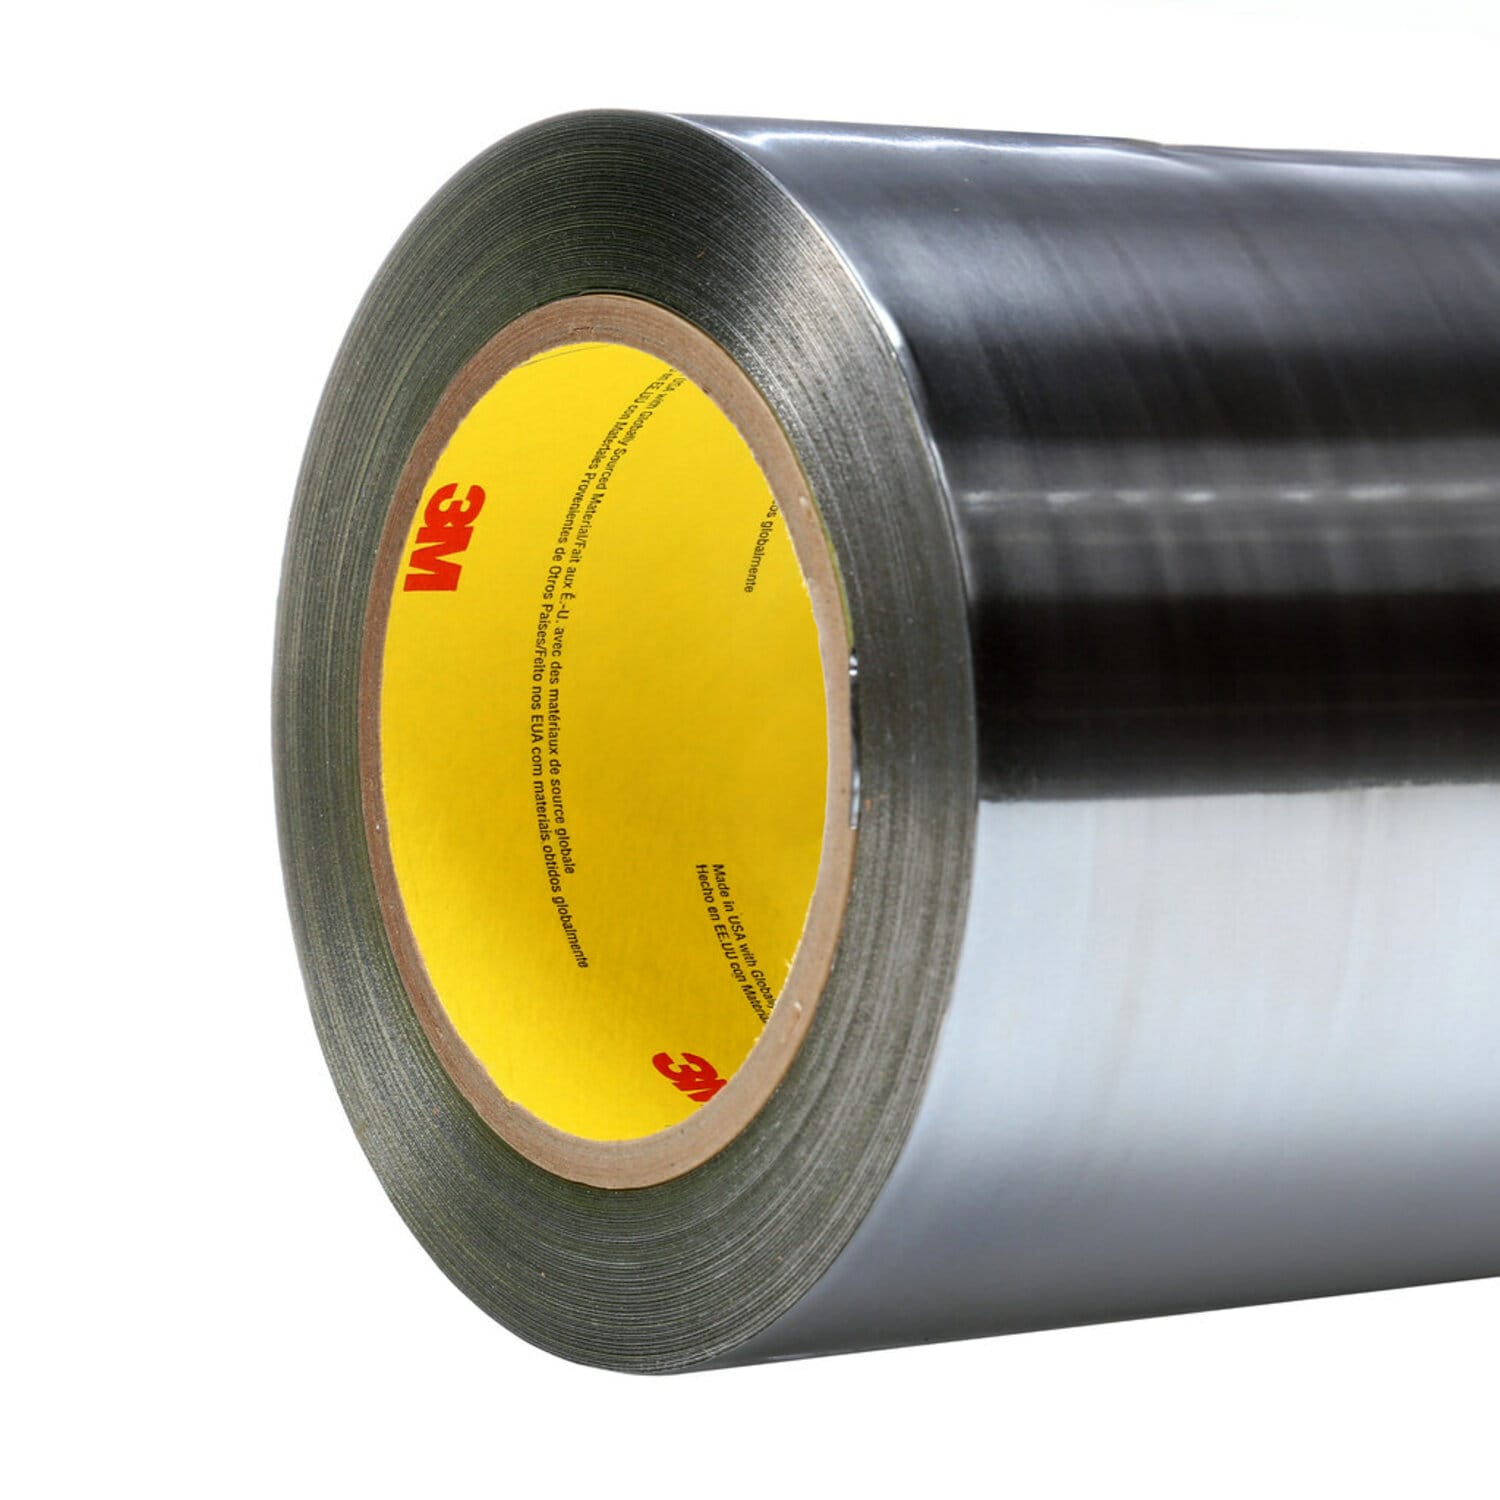 7100132831 - 3M Aluminum Foil Tape 425, Silver, 12 in x 60 yd, 4.6 mil, 1 roll per
case